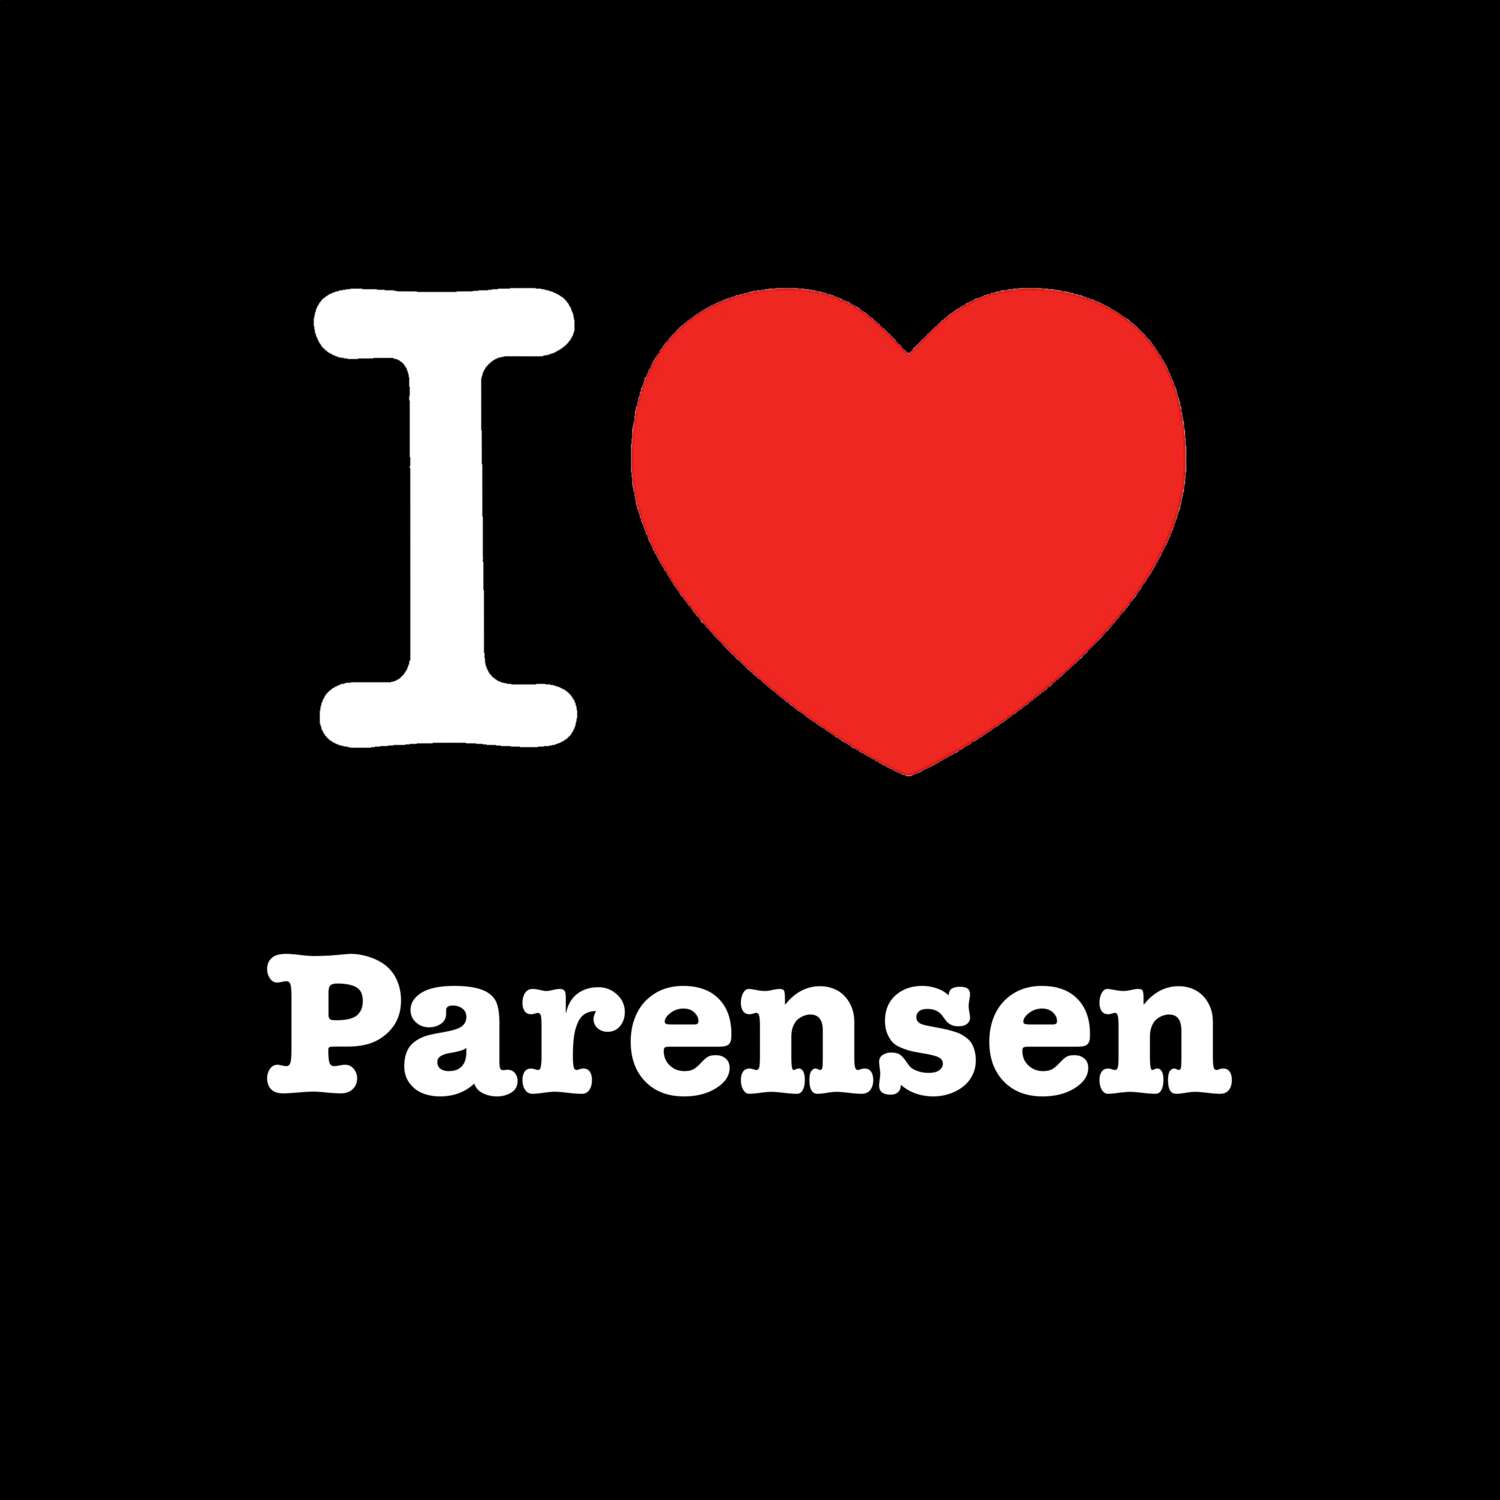 Parensen T-Shirt »I love«